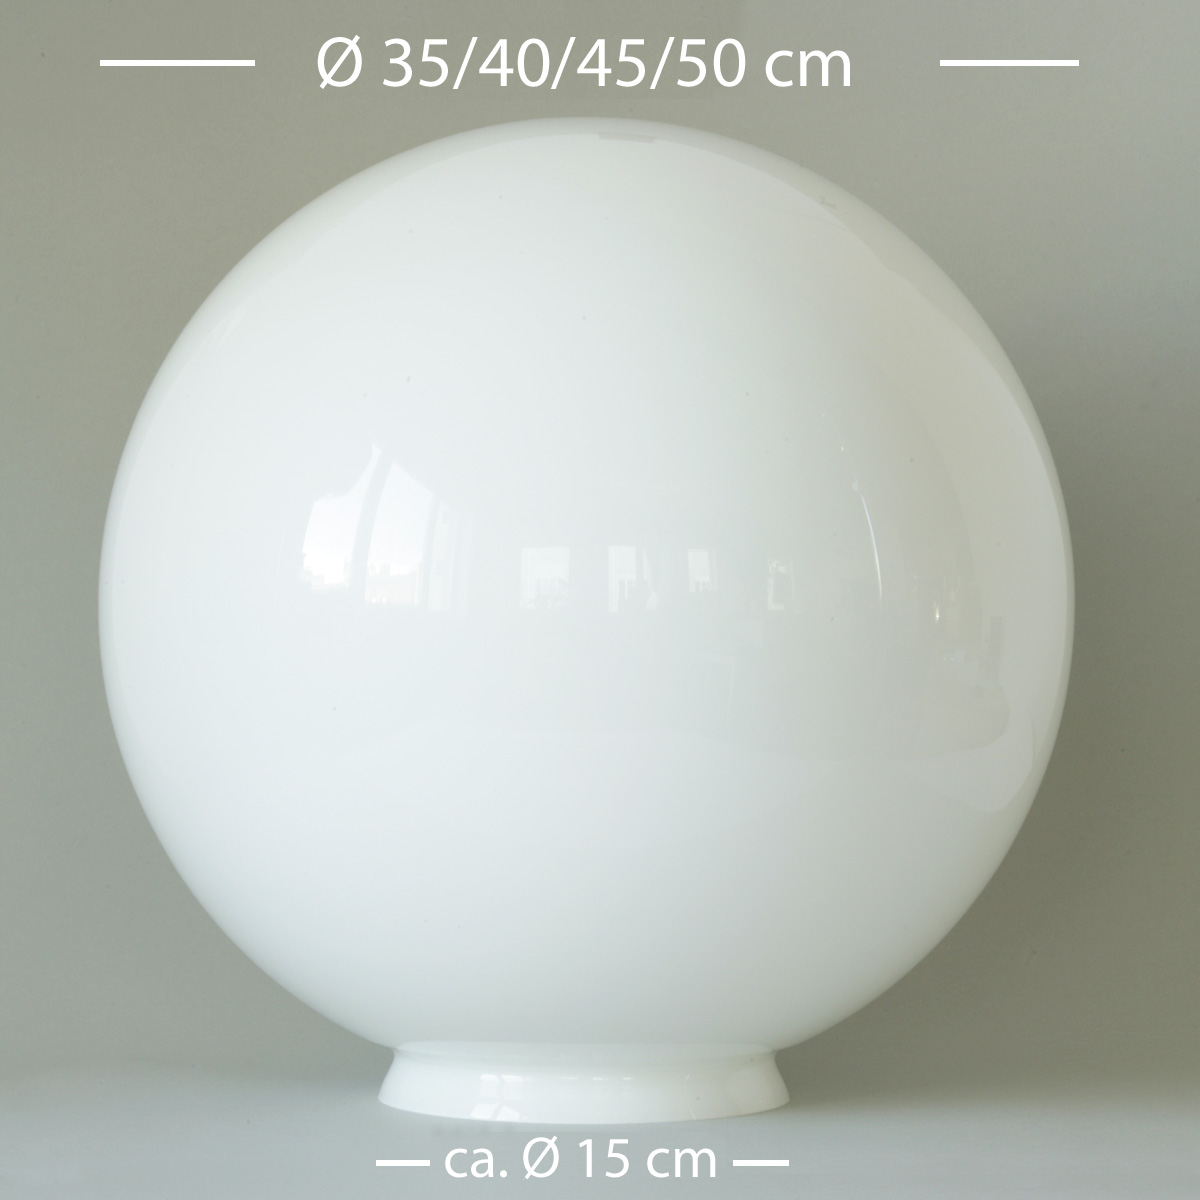 Glaskugel Ø 35/40/45/50 cm in Opalweiß mit Ø 15 cm-Anschluss